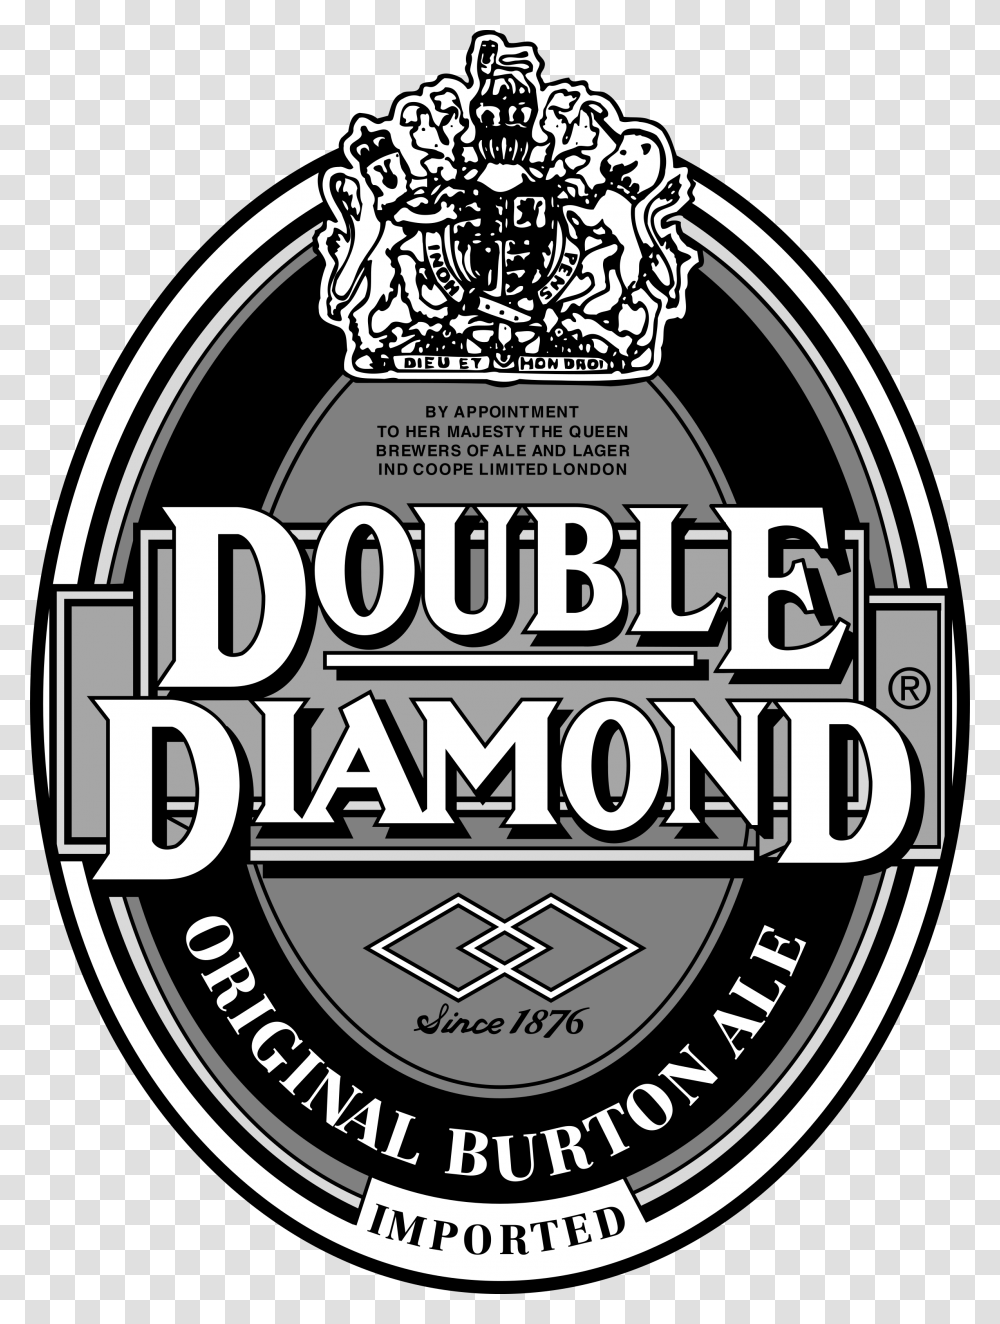 Double Diamond Burton Pale Ale, Logo, Flyer, Paper Transparent Png